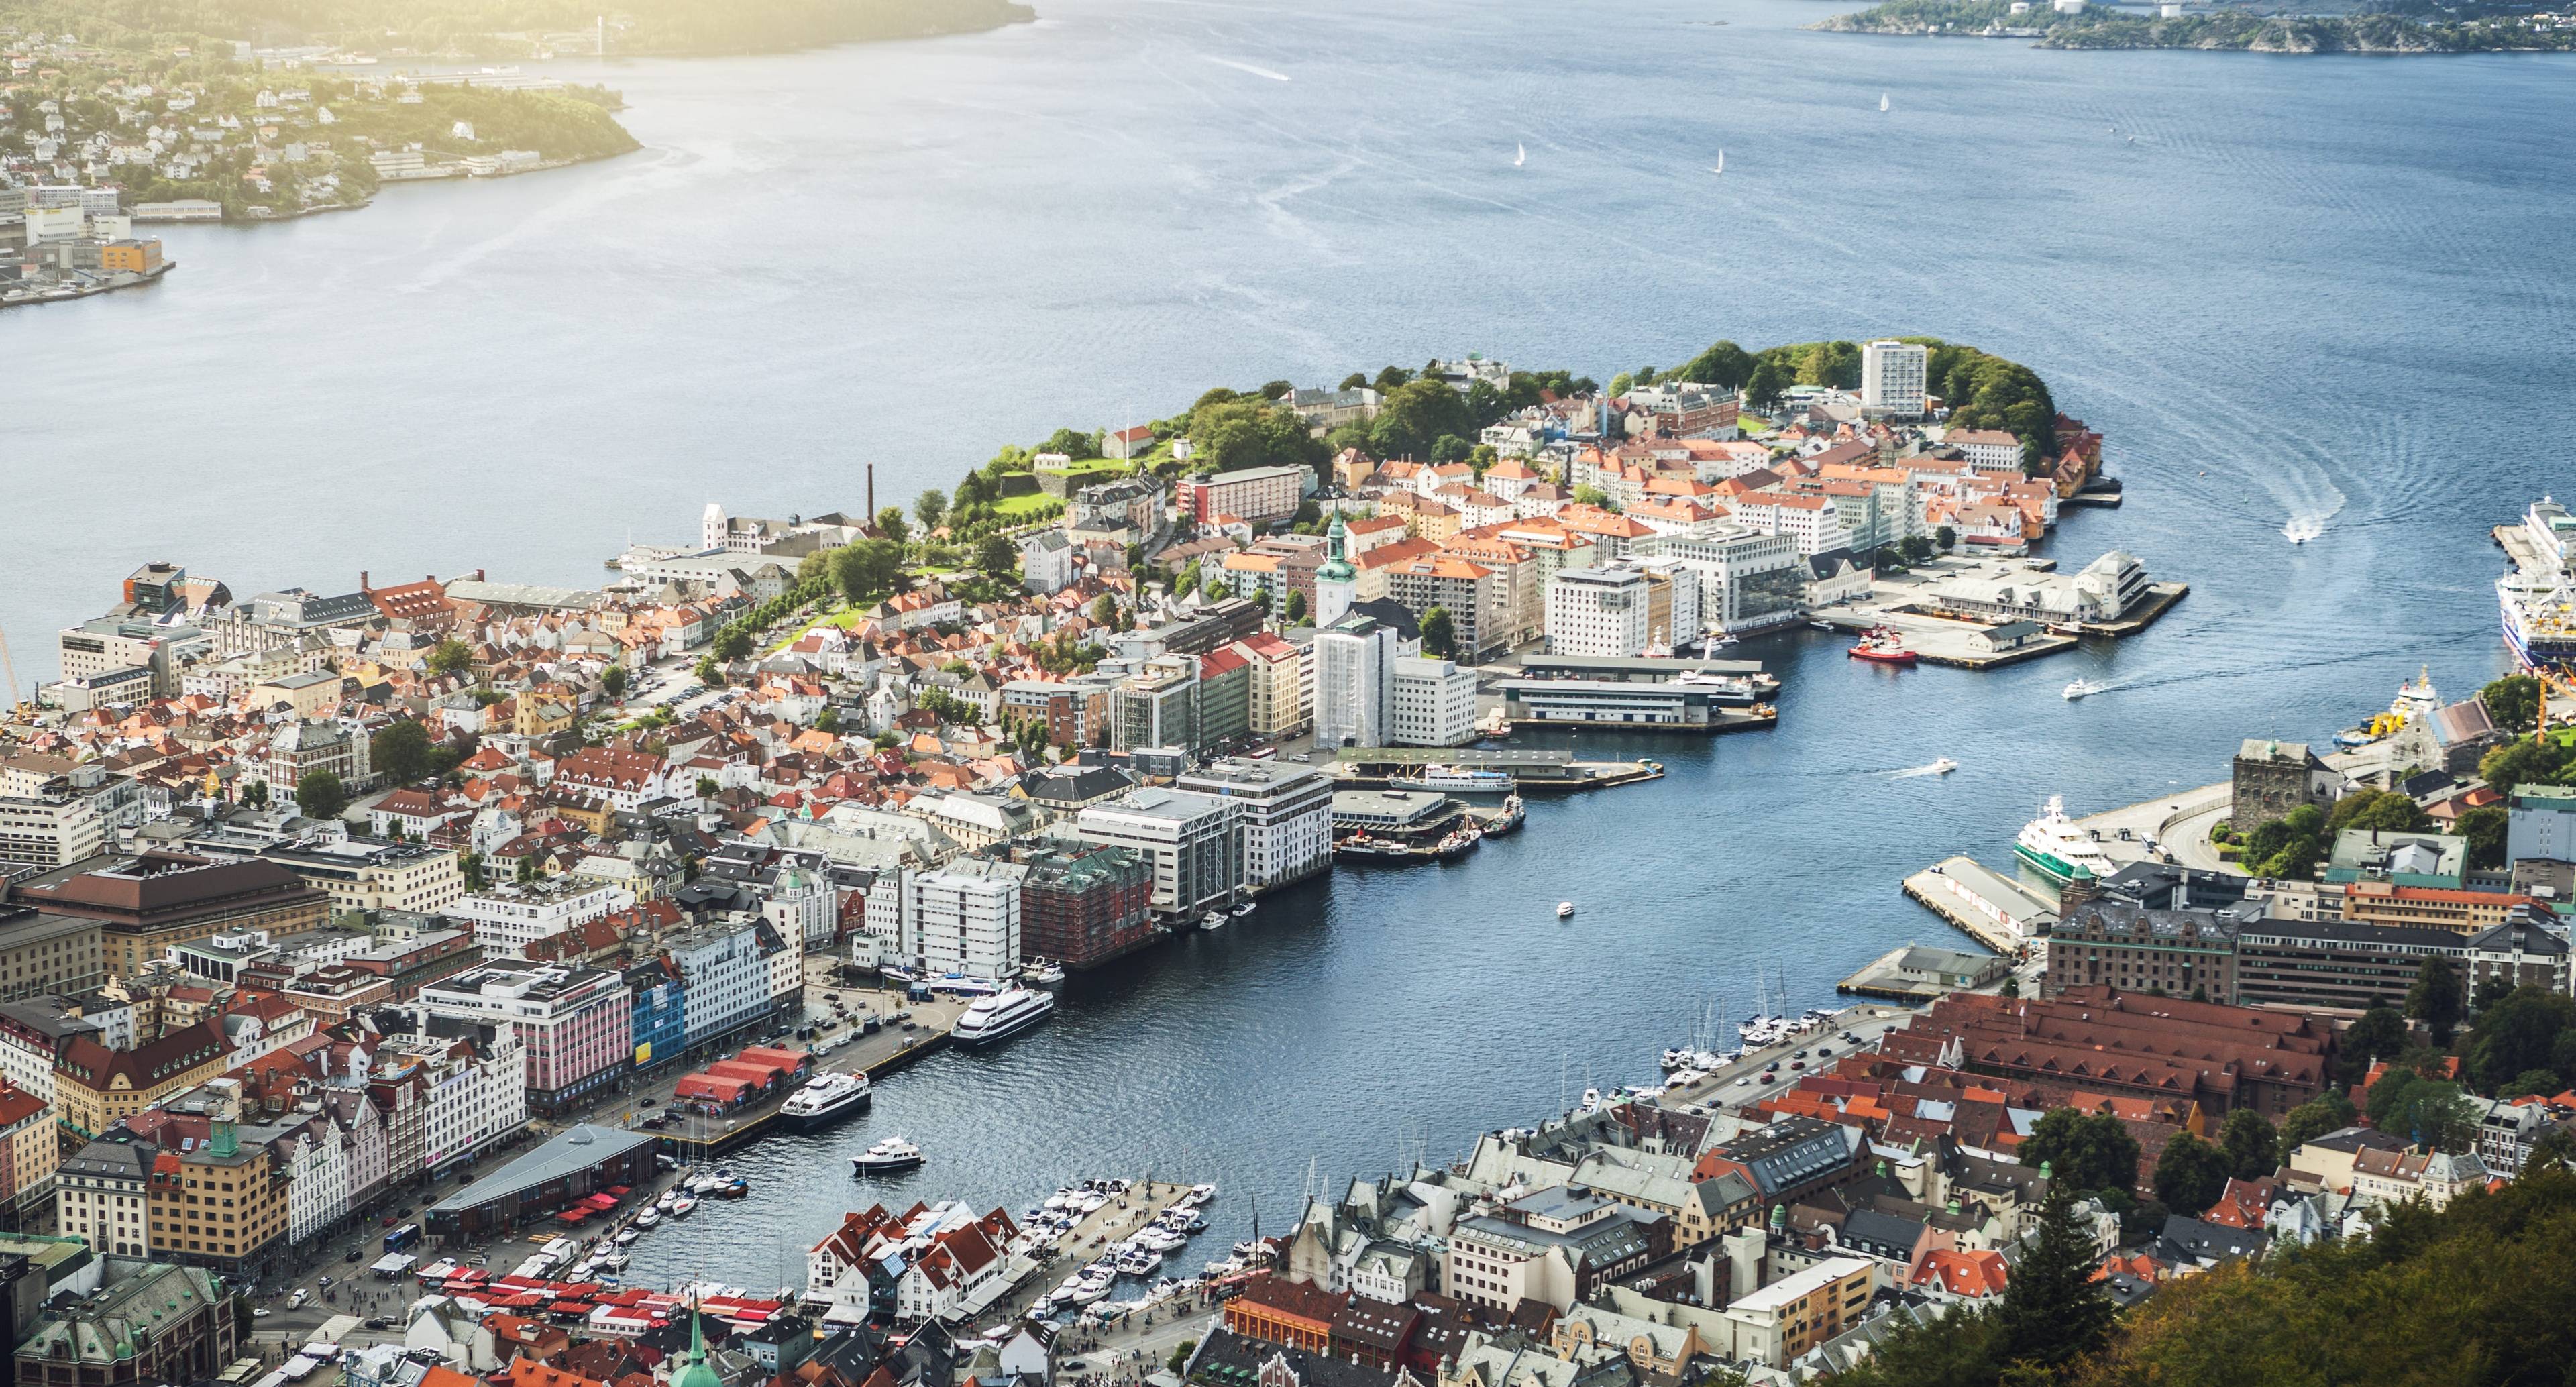 Découvrez les merveilleuses montagnes qui entourent la ville de Bergen lors de cette aventure le long de la célèbre côte norvégienne.